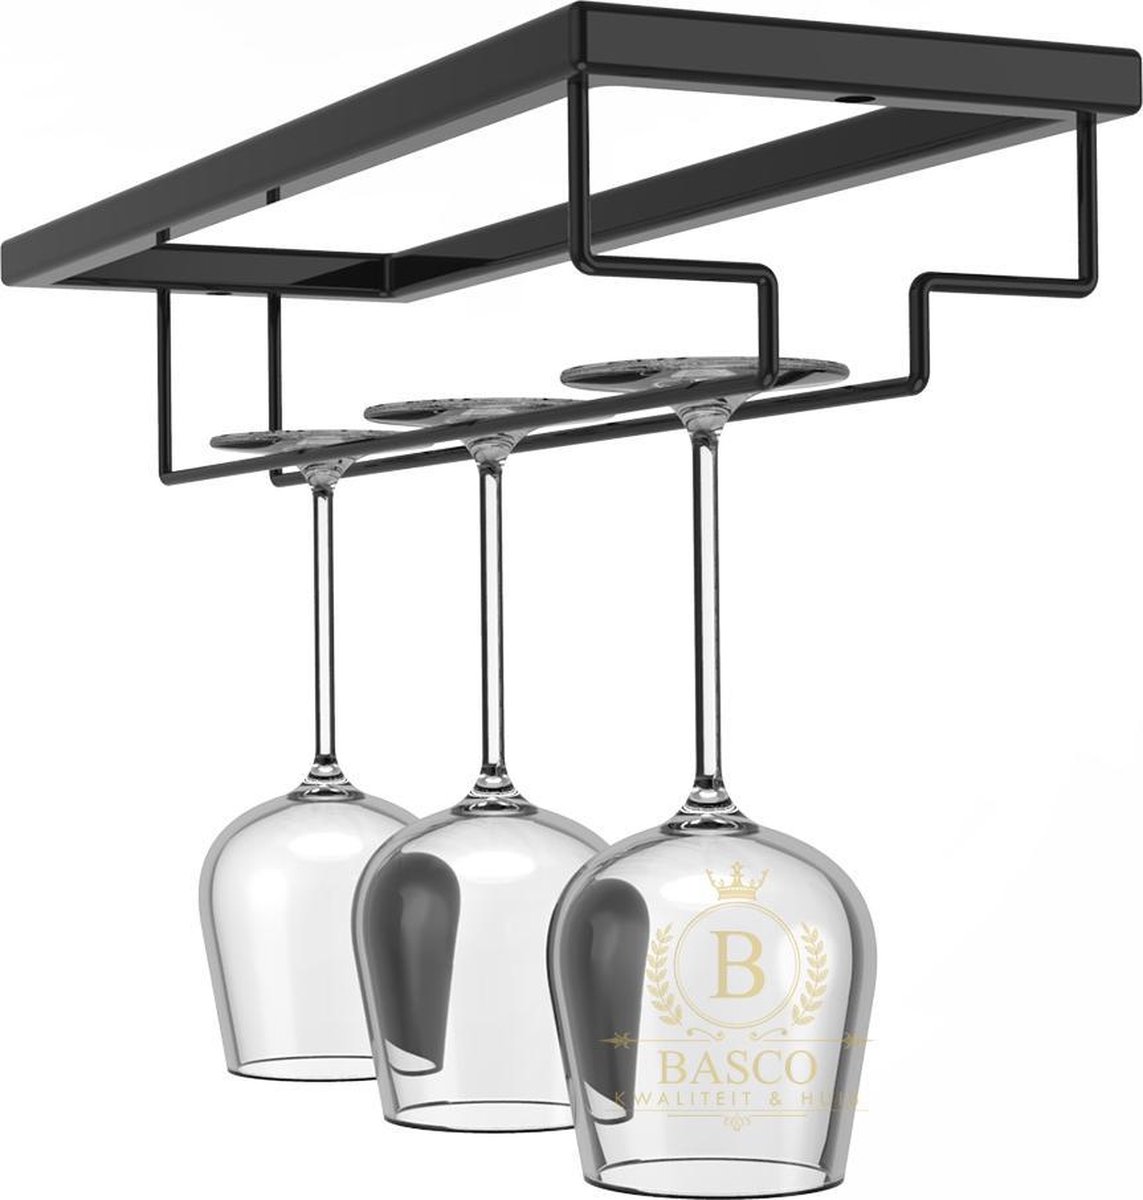 Basco Products - Ophangrek Wijnglazen – Metaal - Zwart - Voor 3 Glazen - Basco Products